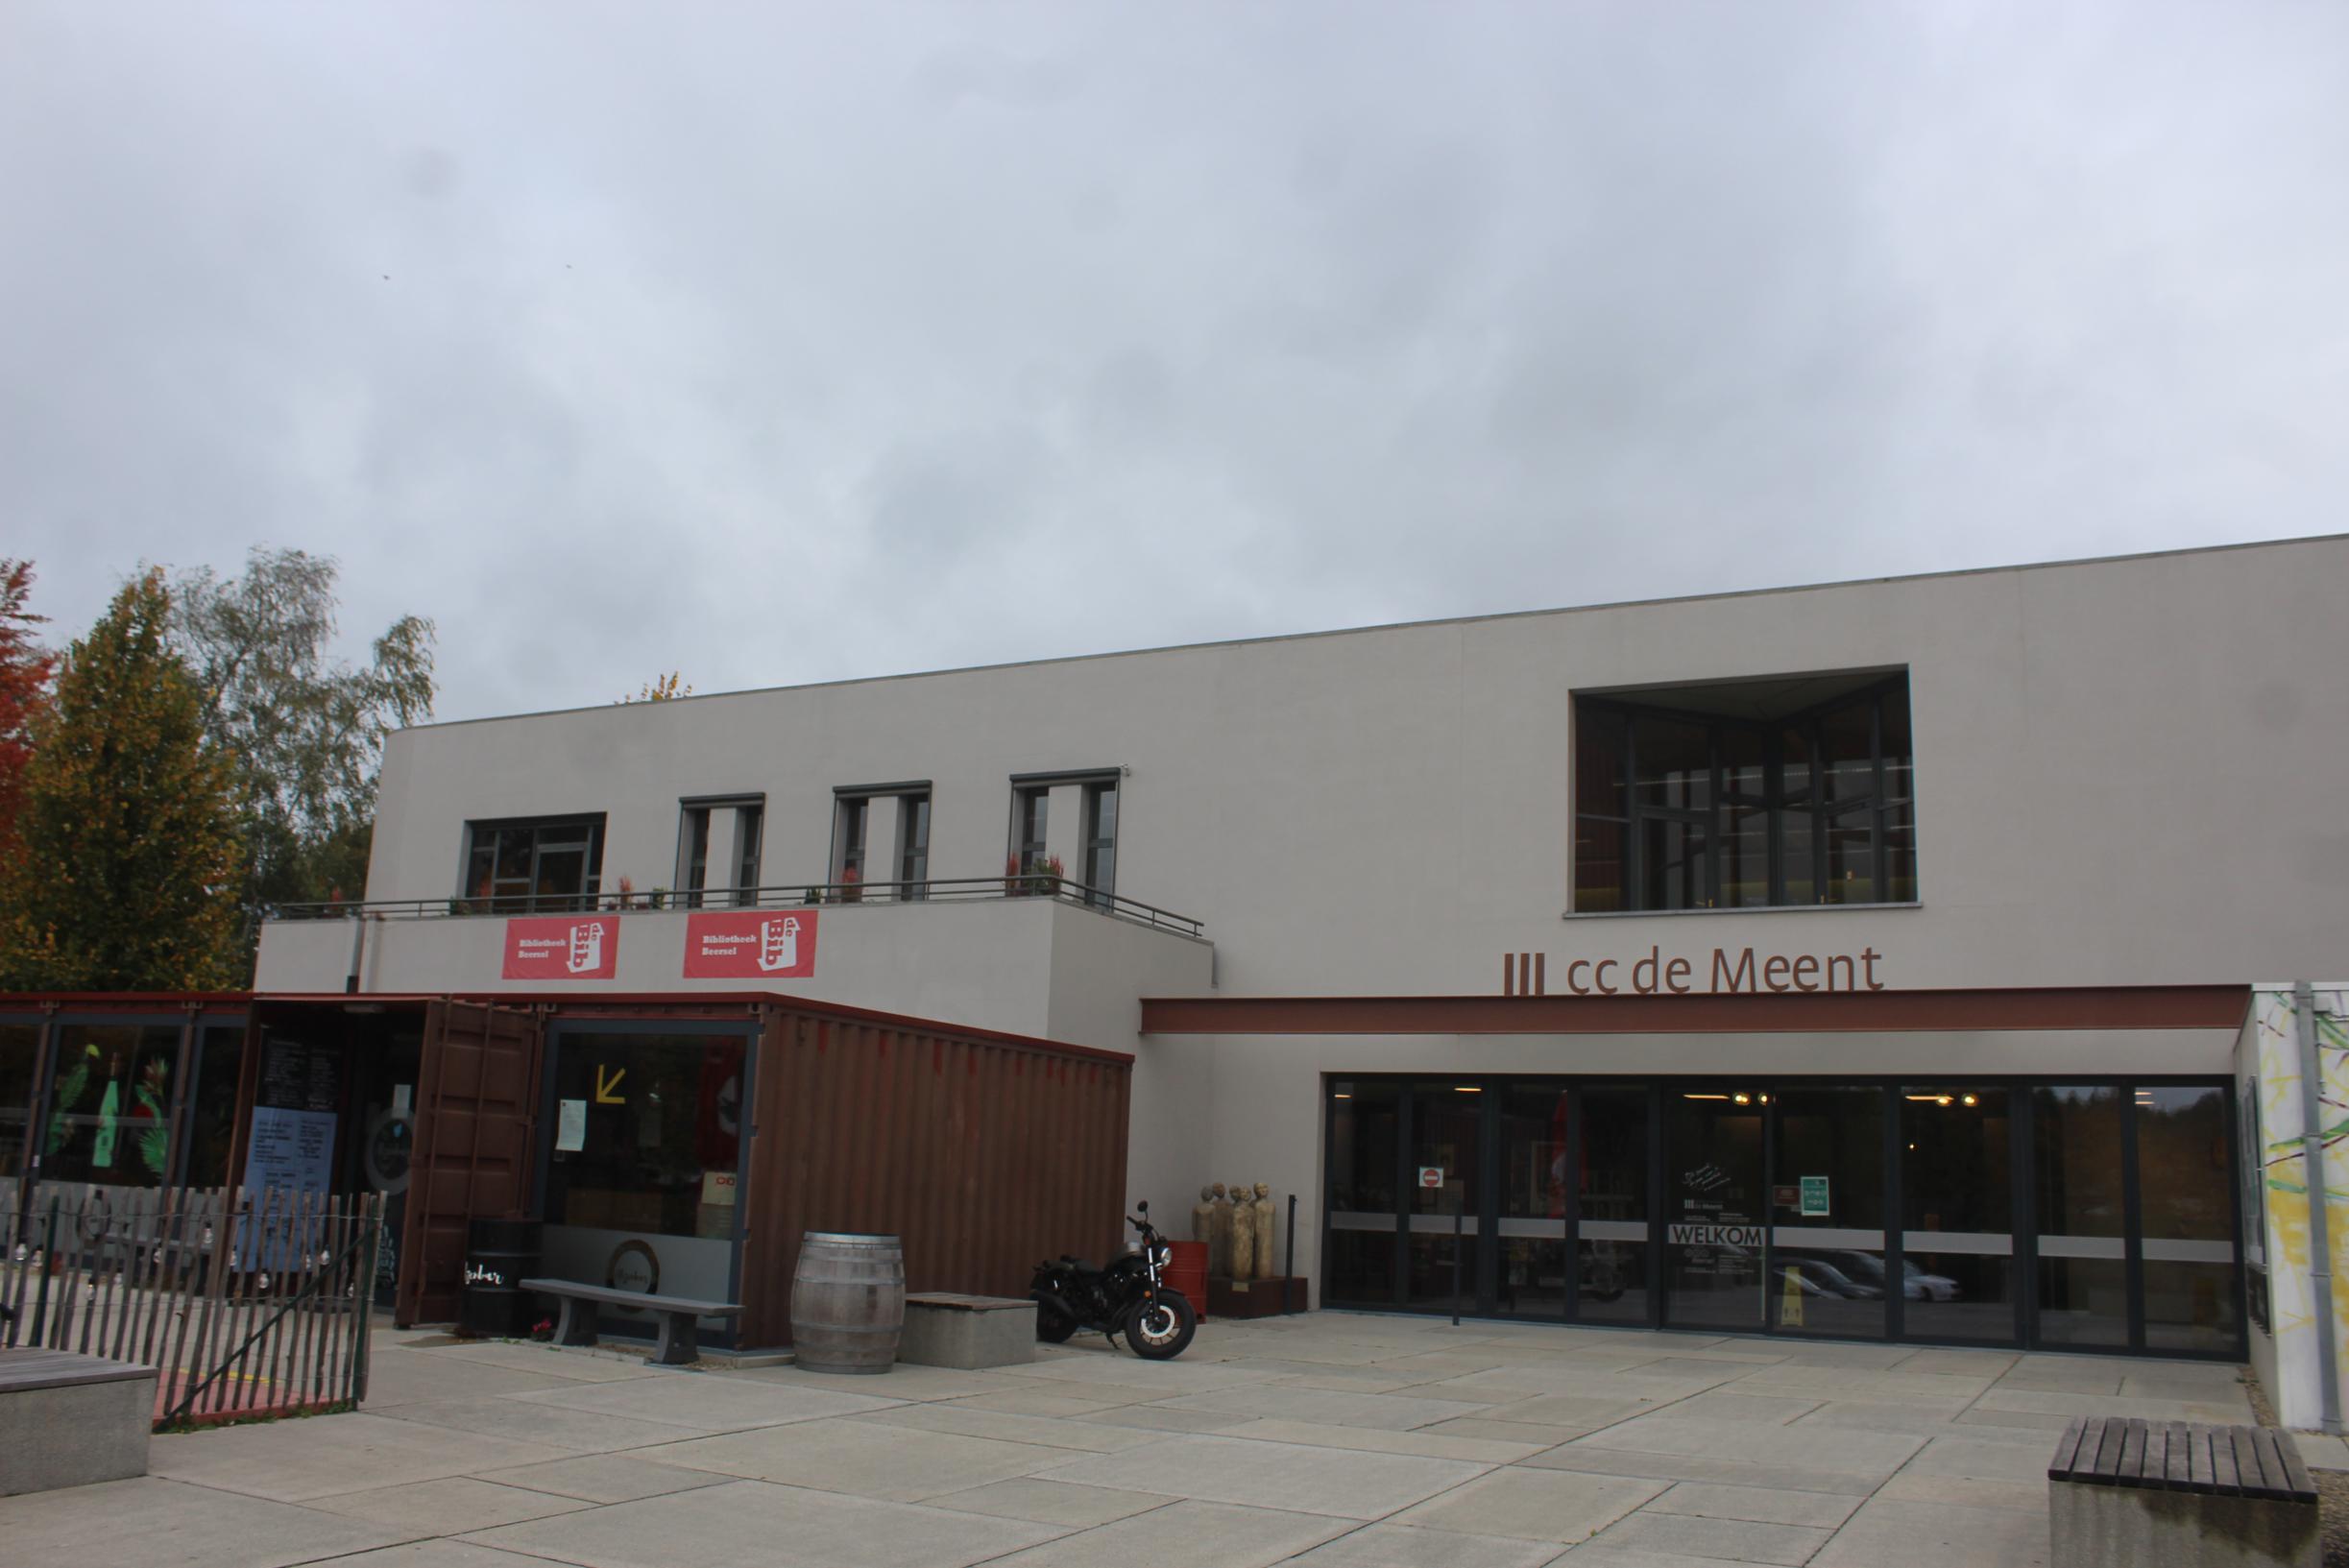 Eerste regionale theatermarkt strijkt neer in De Meent: “Inspirerende namiddag voor theaterliefhebbers”